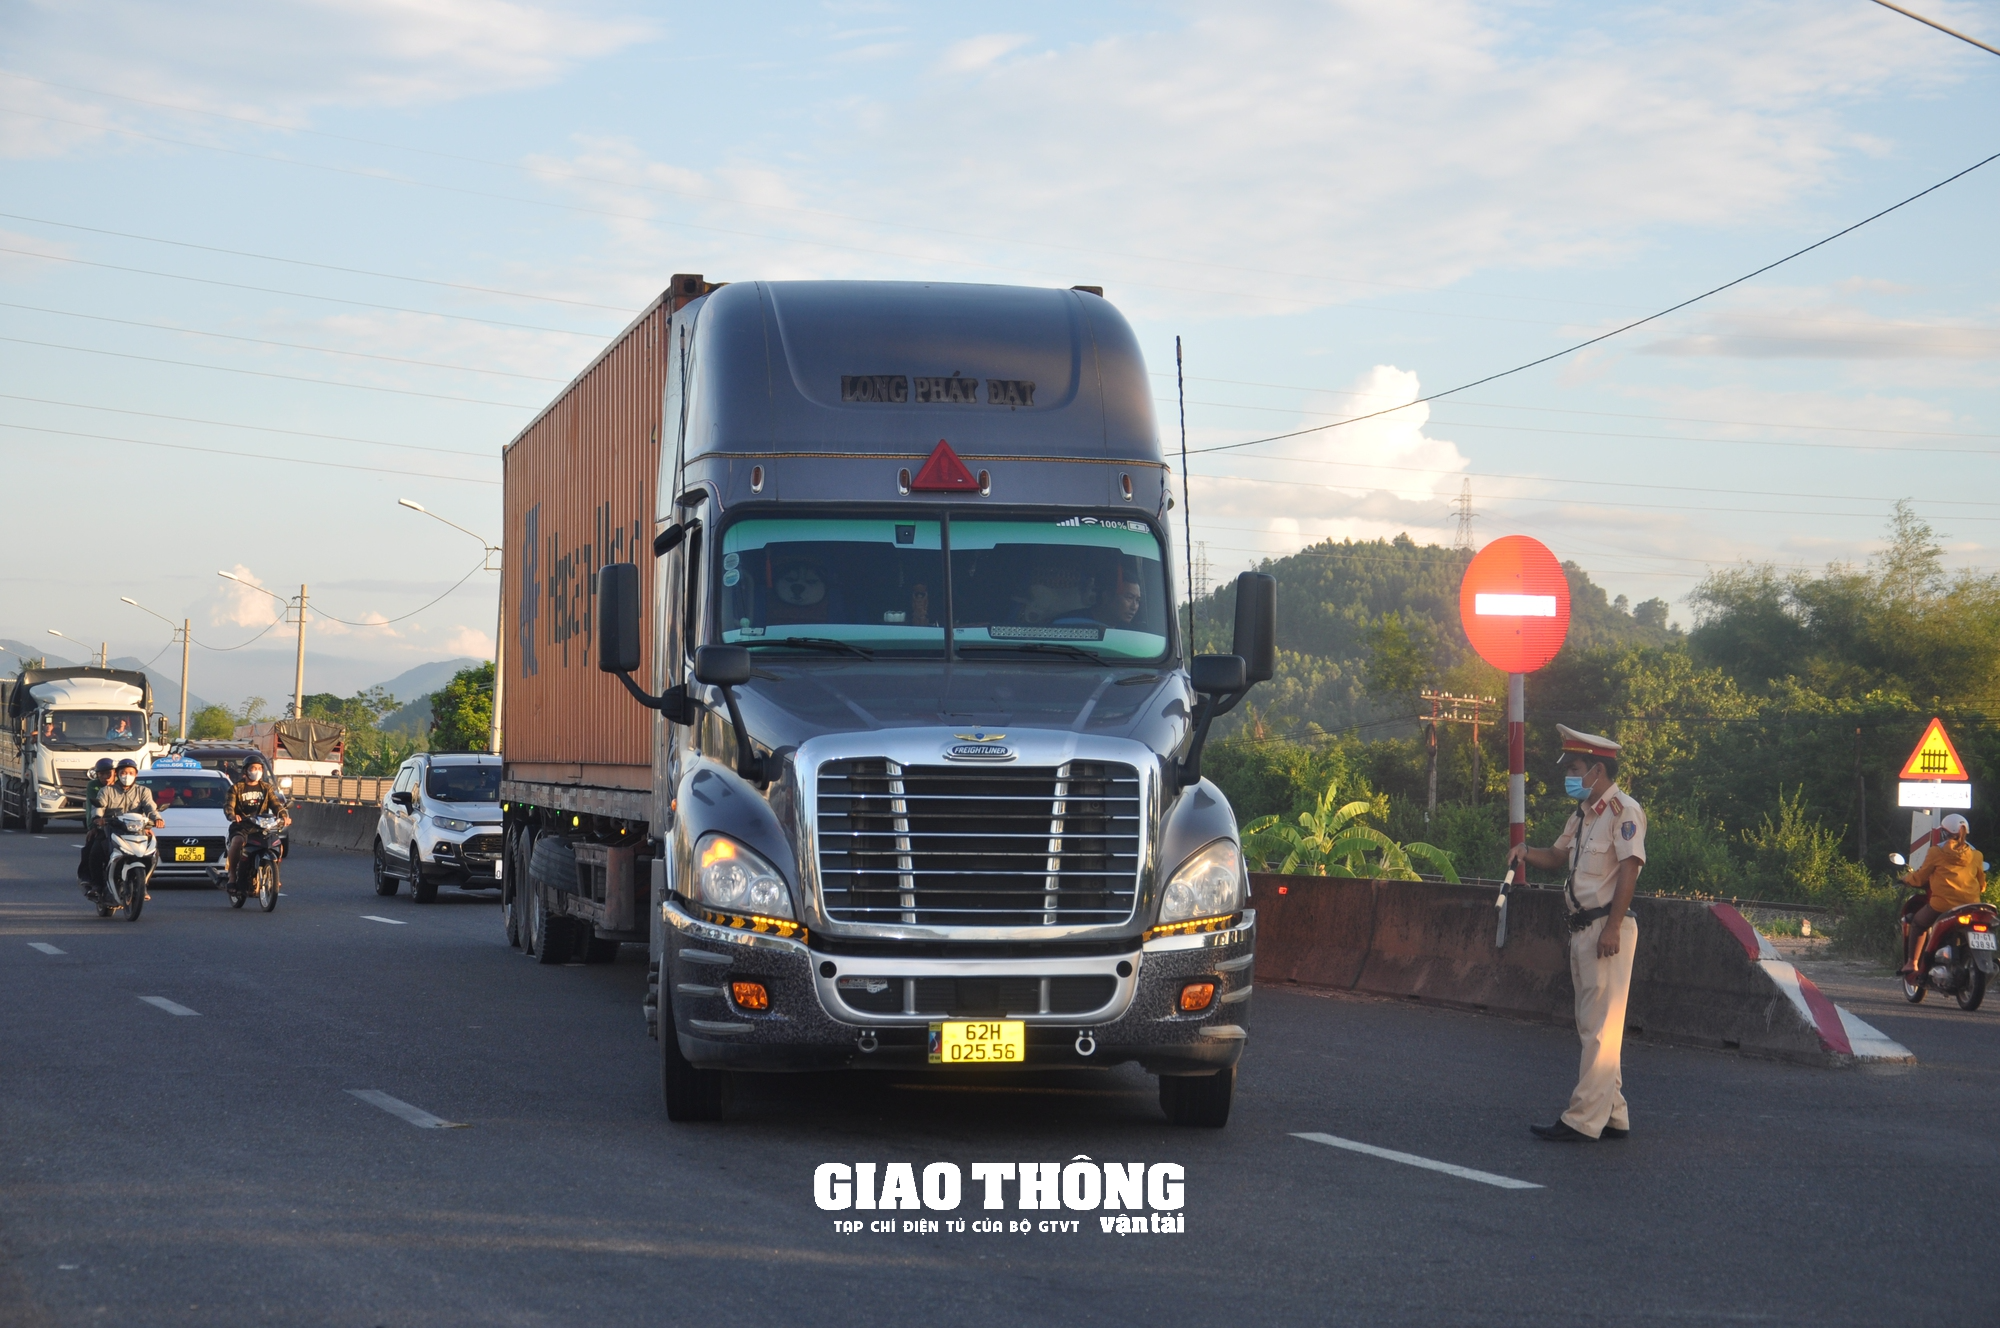 Video CSGT Bình Định xử lý nhiều xe quá tải, xe khách vi phạm - Ảnh 3.